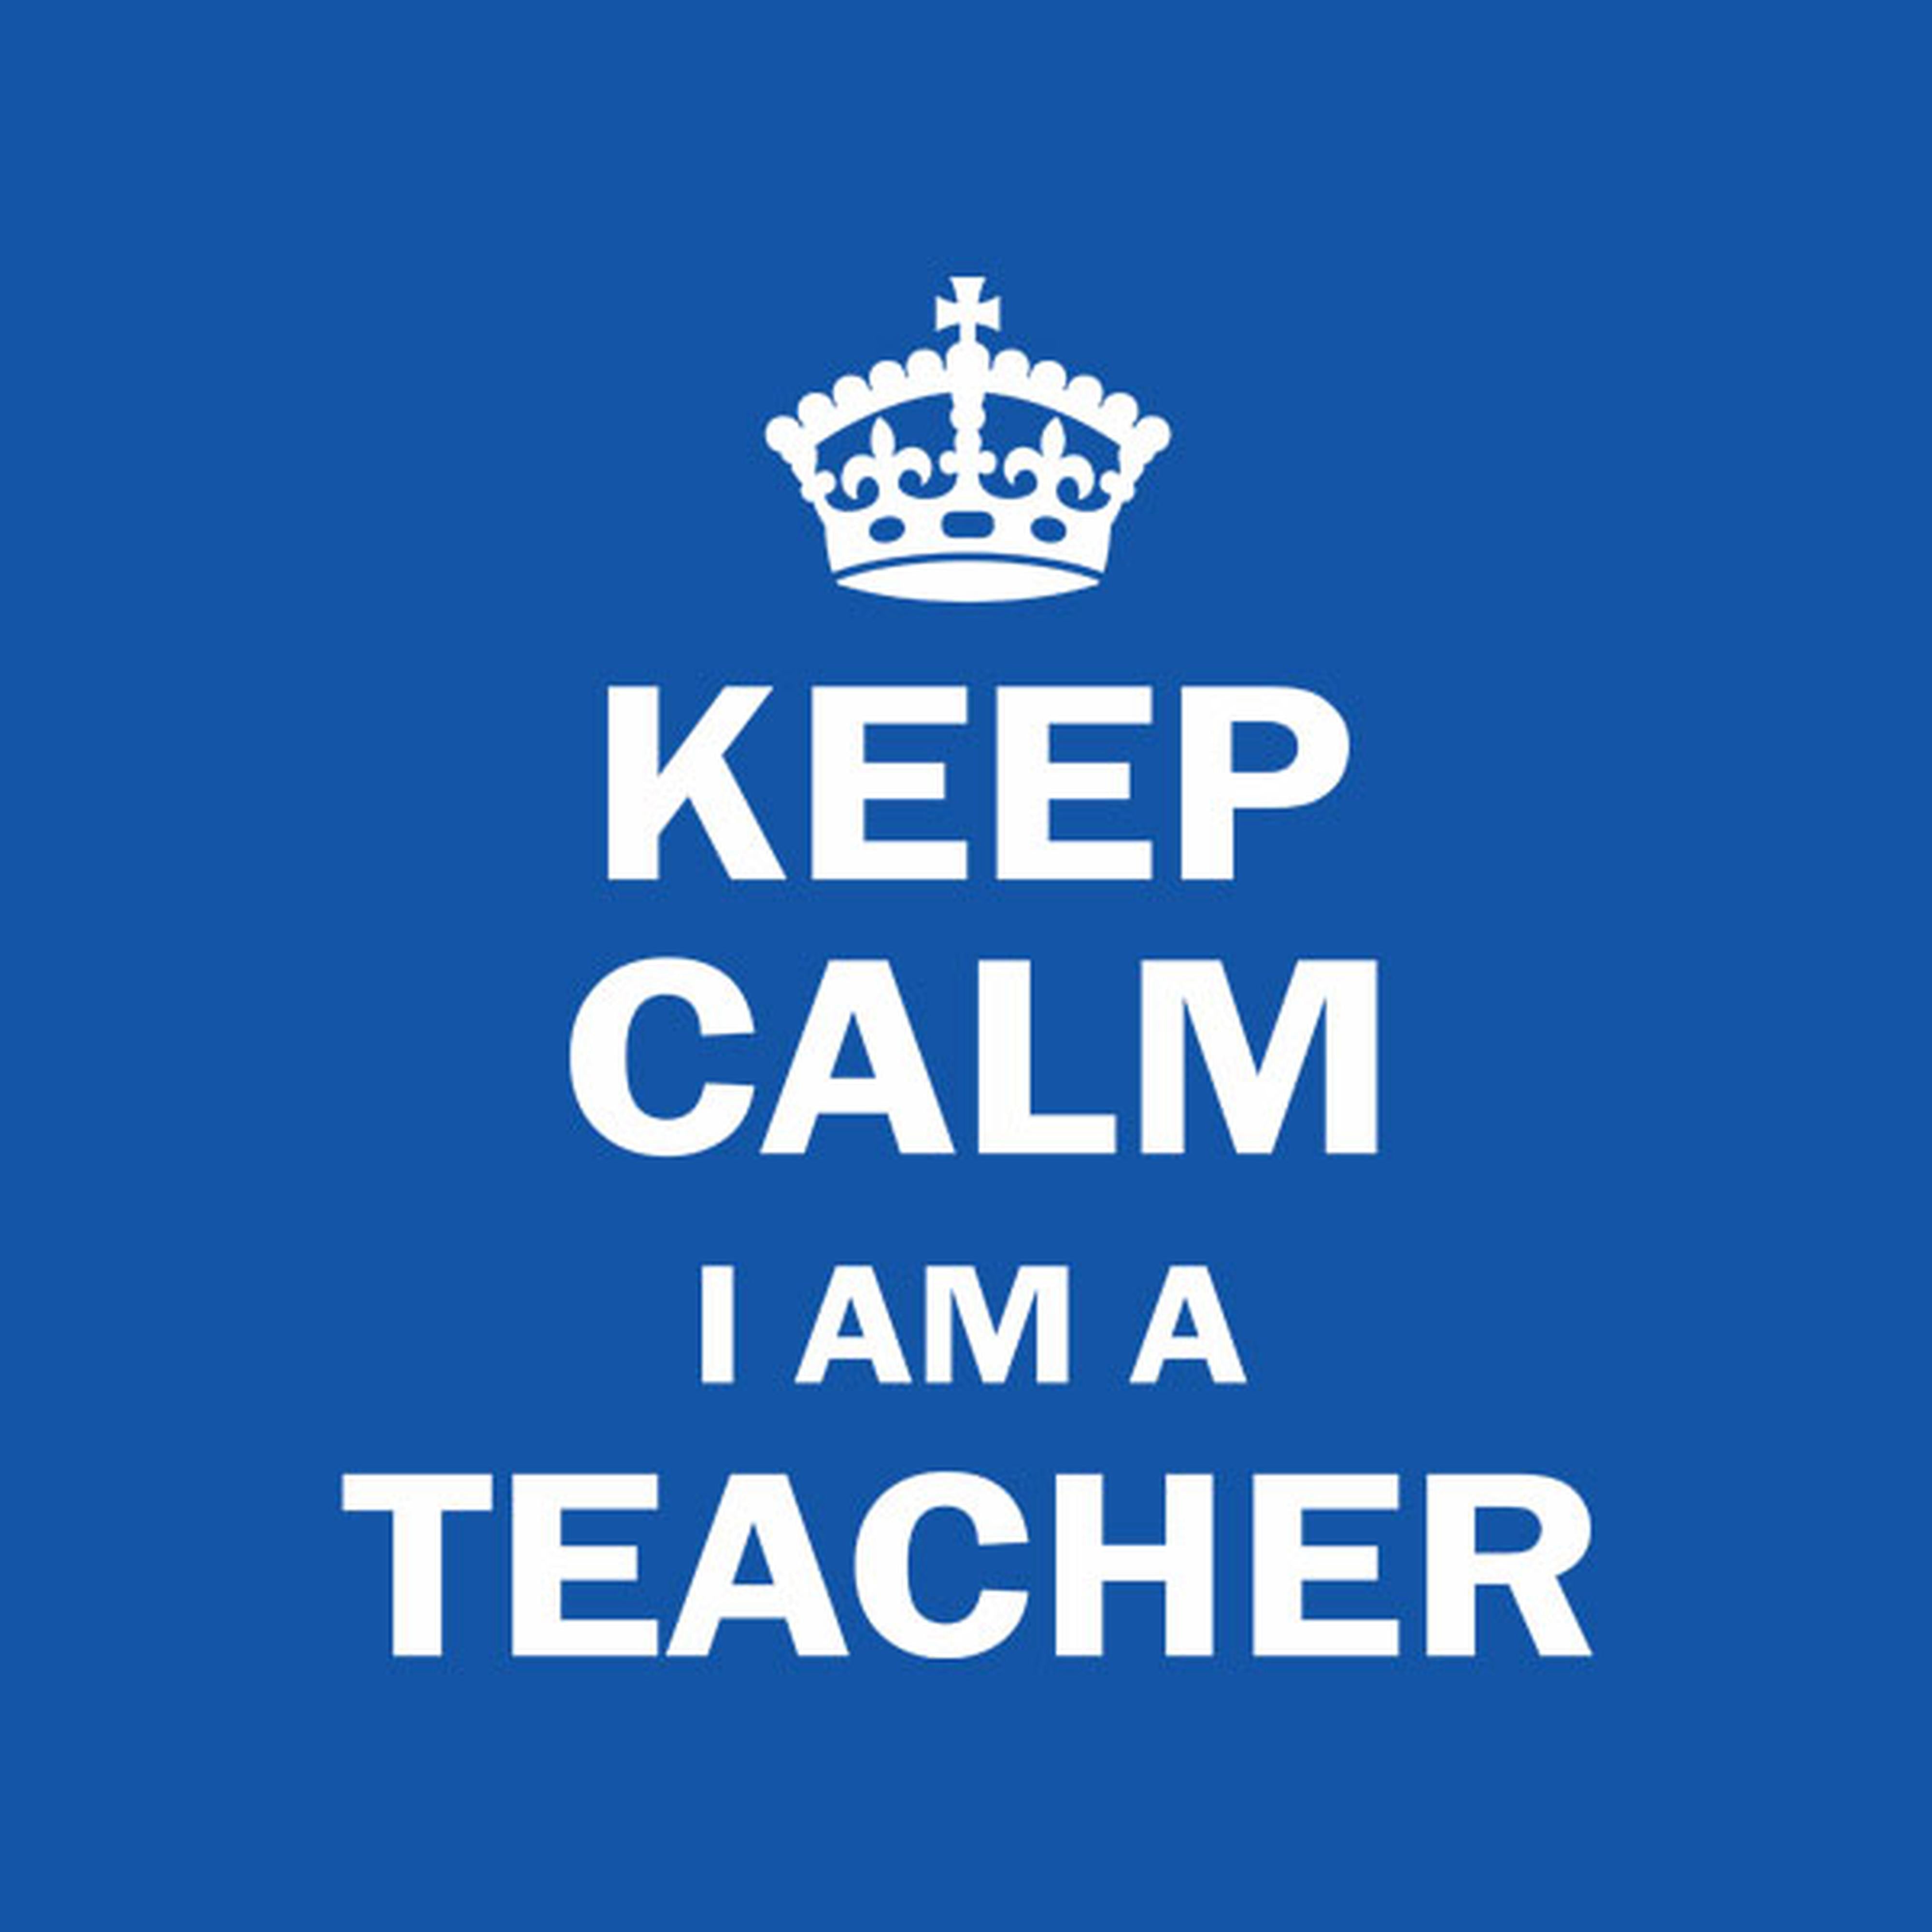 Keep calm. I am a teacher. - T-shirt